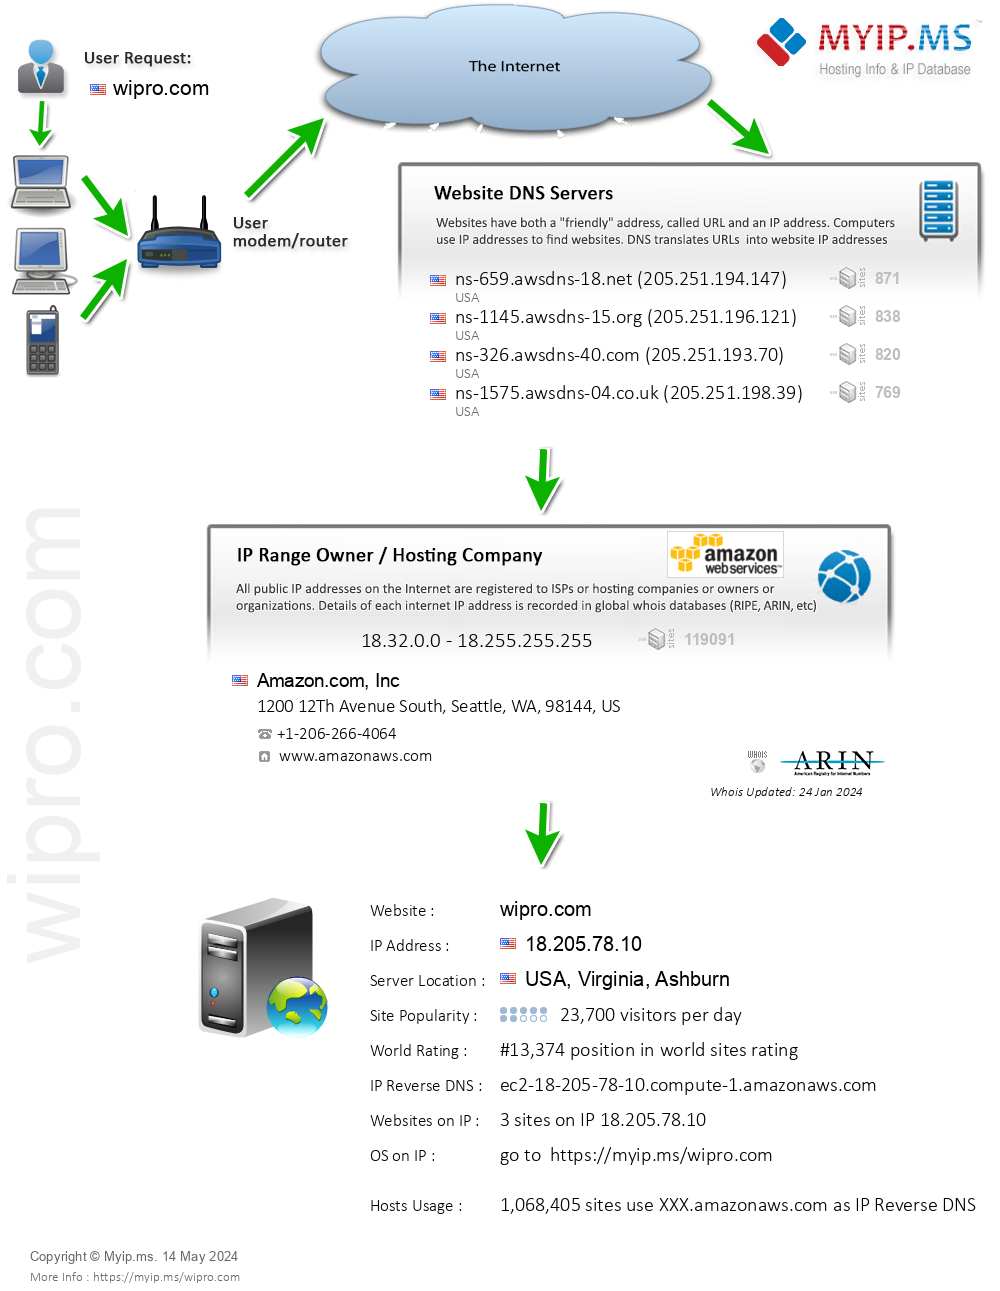 Wipro.com - Website Hosting Visual IP Diagram